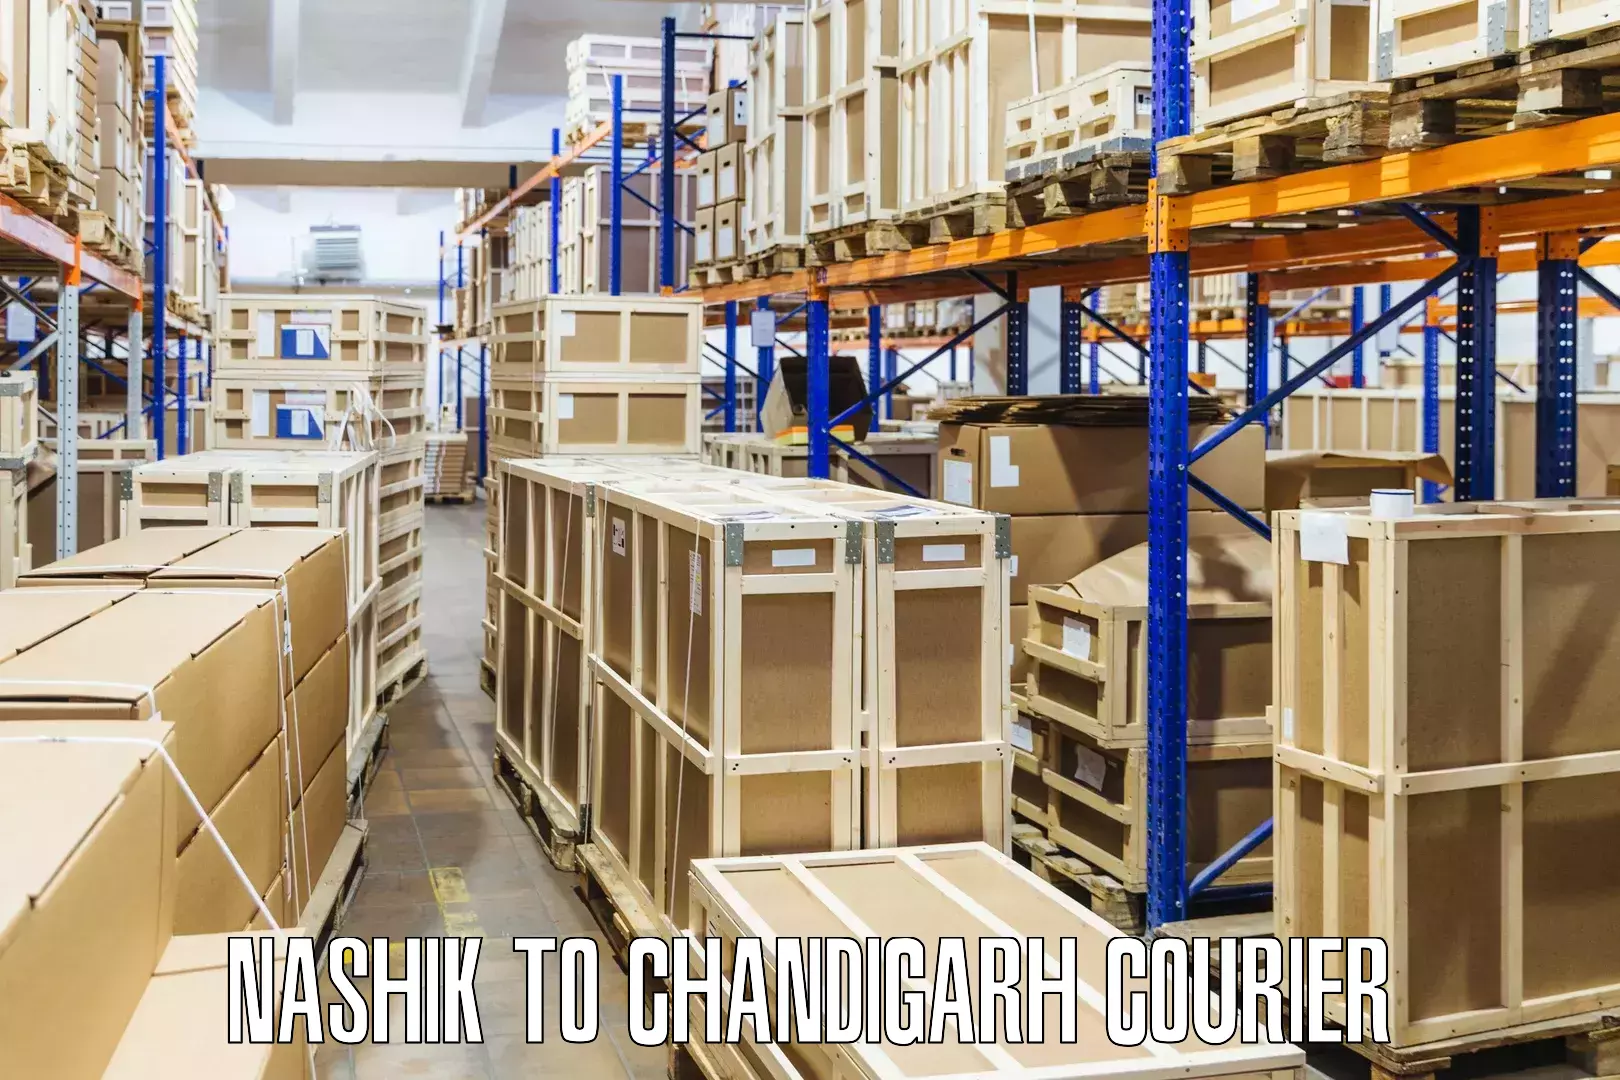 Return courier service Nashik to Chandigarh